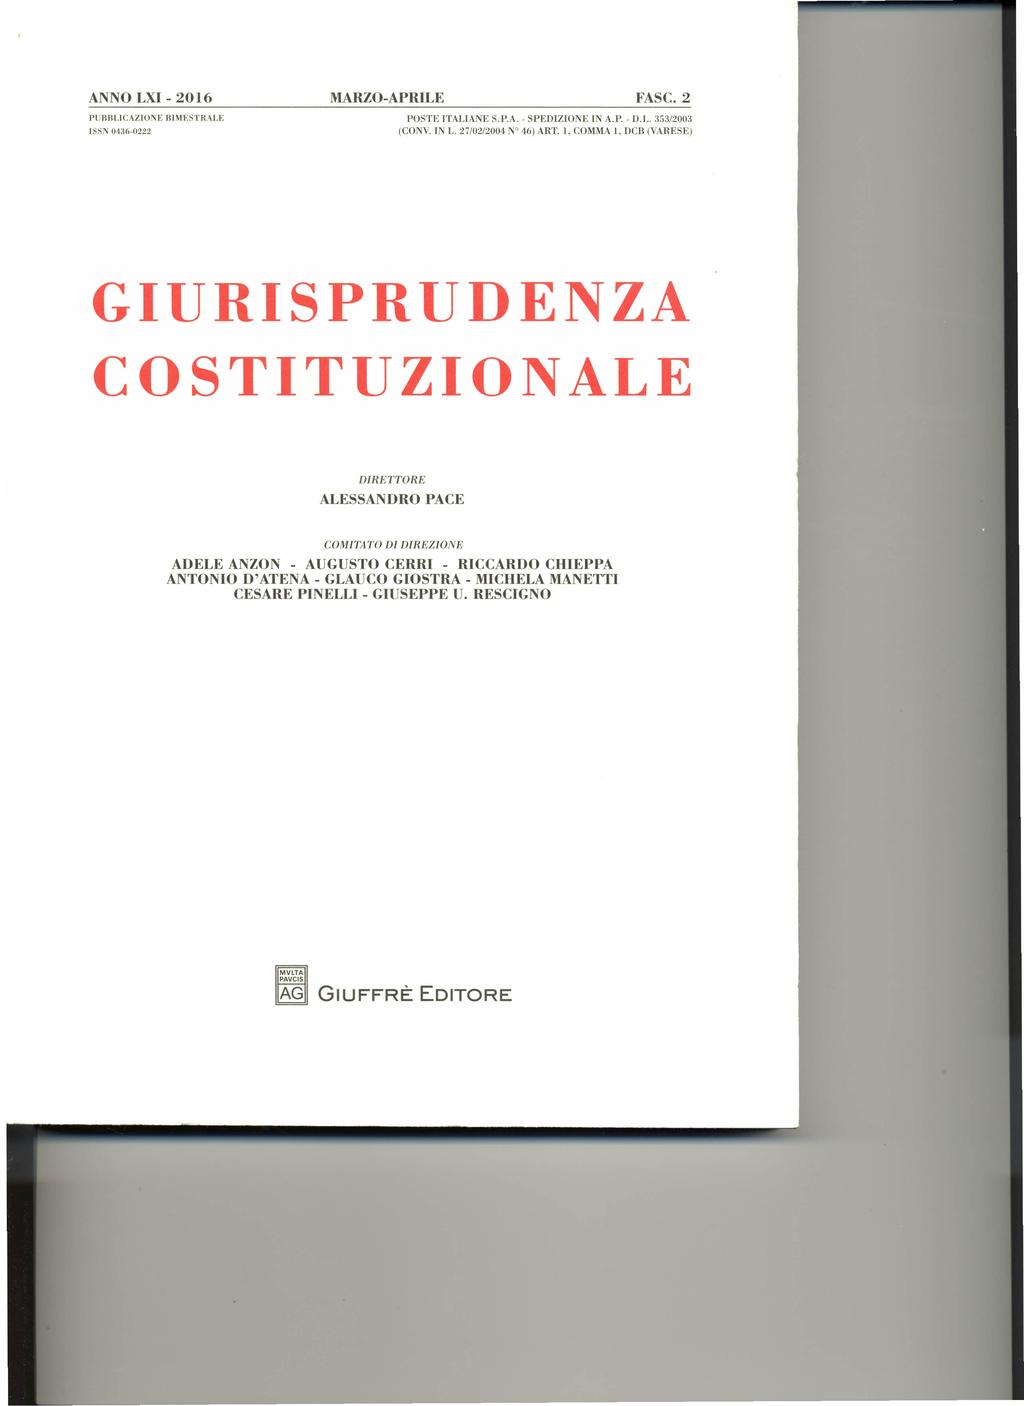 ANNO LXI - 2016 MARZO-APRILE FASC.2 PUBBLICAZIONE ISSN 0436-0222 IlIMESTHALE POSTE ITALIANE S.P.A. - SPEDIZIONE IN A.P. - D.L. 353/2003 (CONV. IN L. 27/02/2004 N 46) ART.